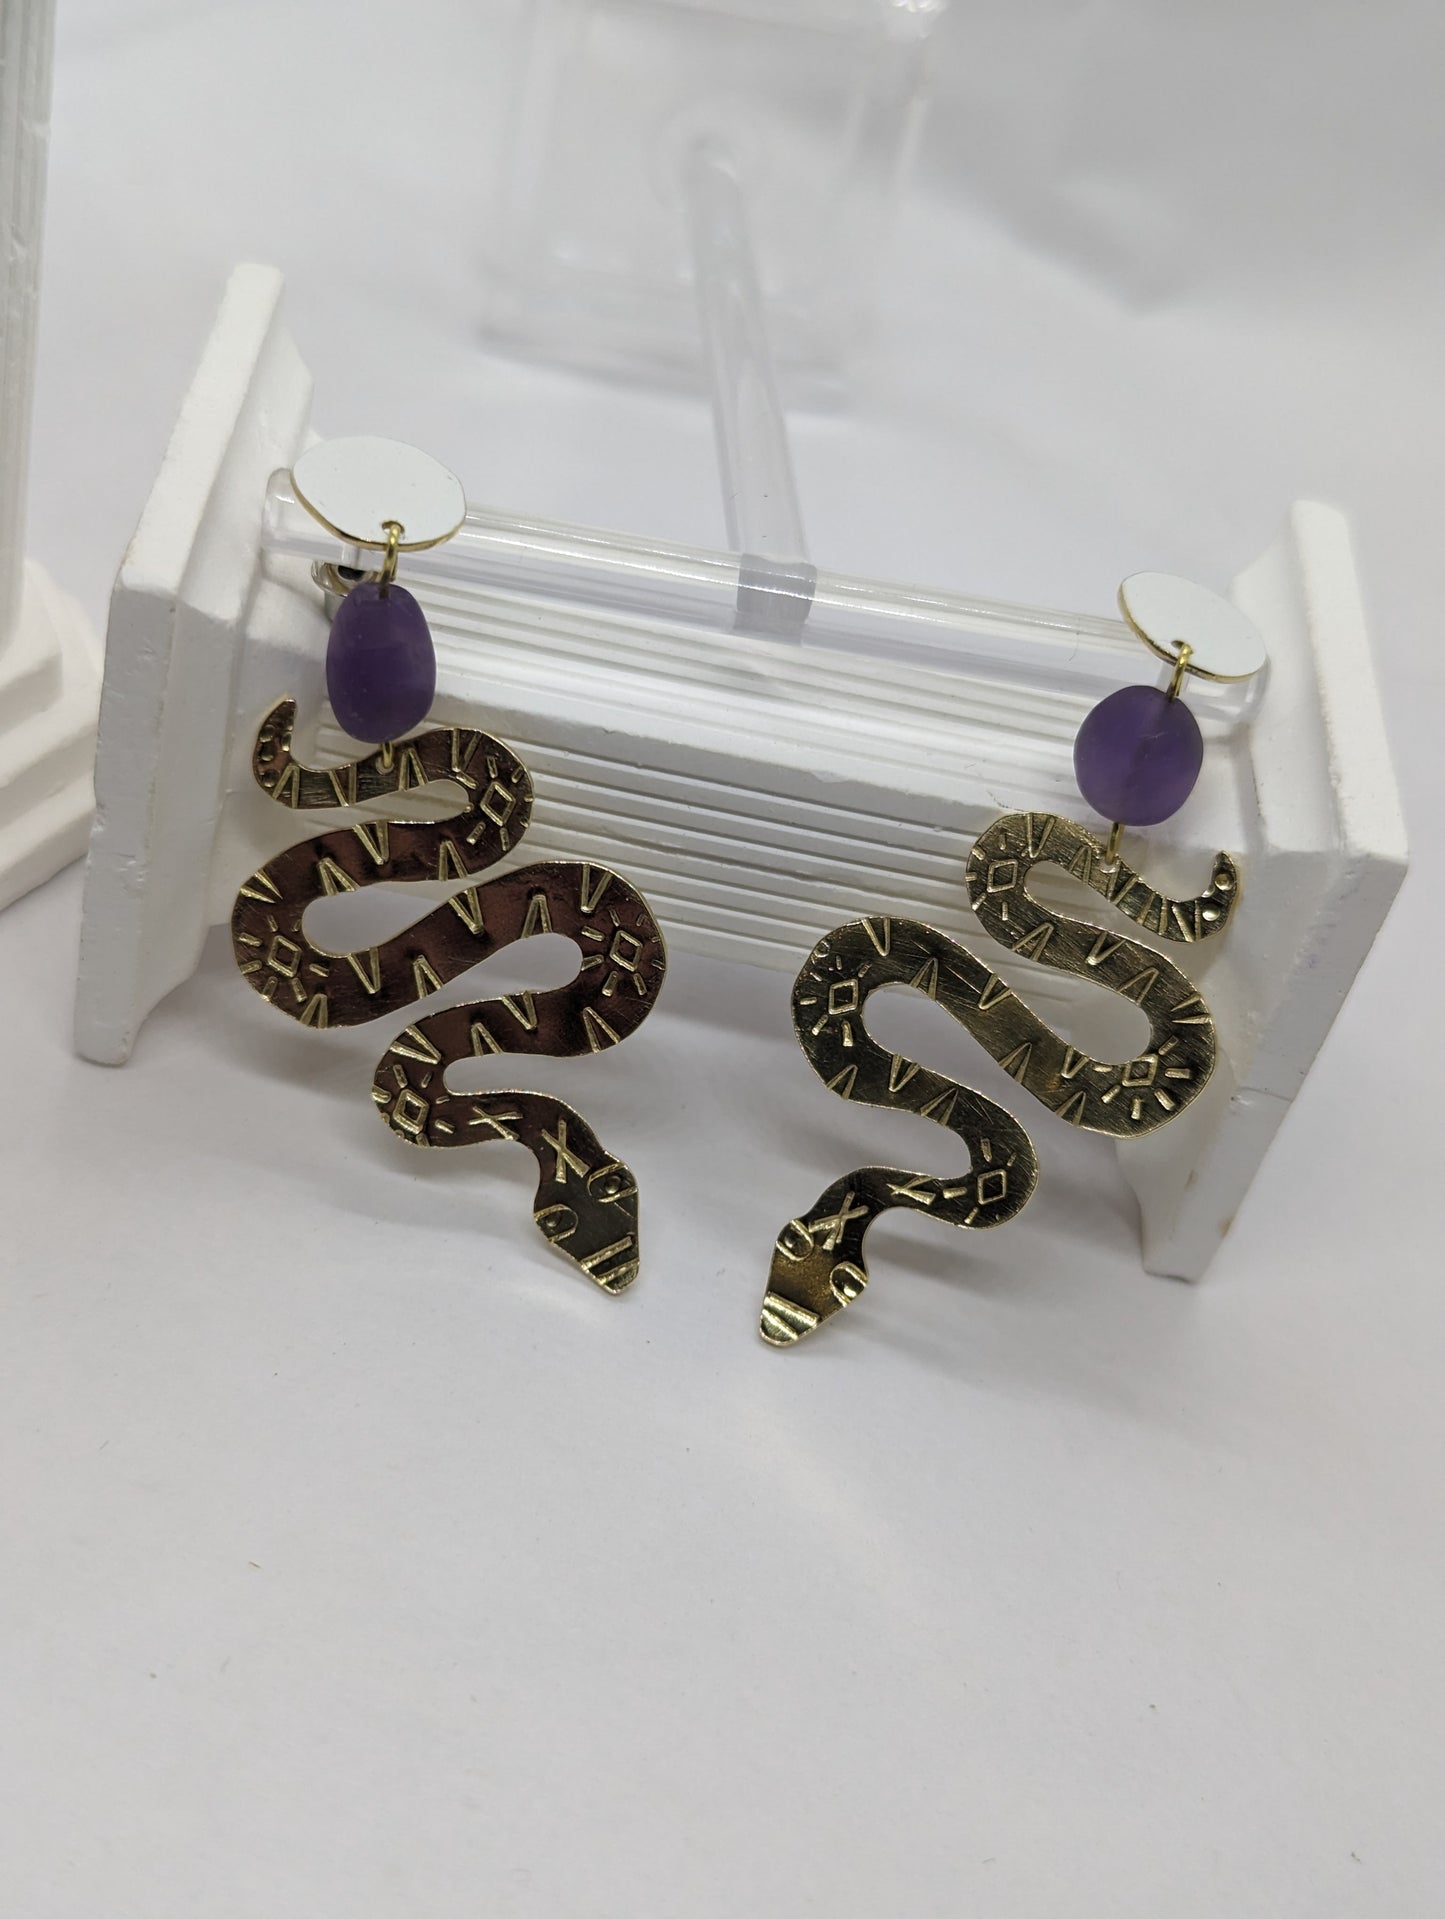 Snake Earrings 'The Serpent's Path Amethyst Earrings'